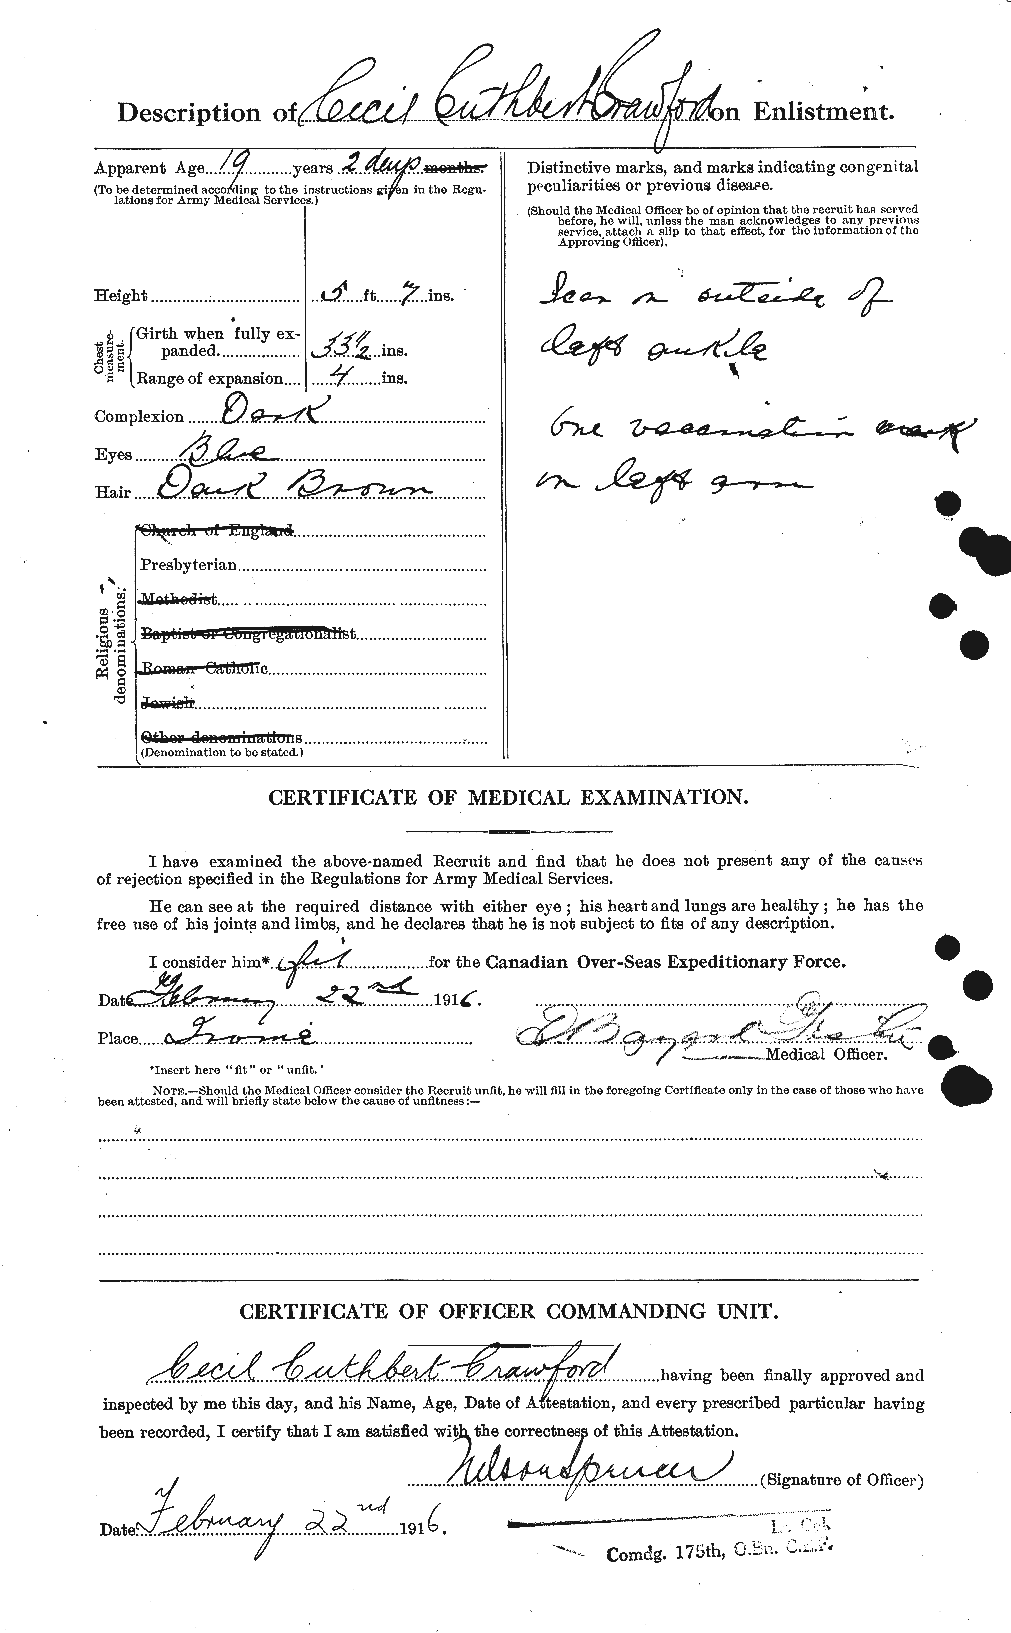 Dossiers du Personnel de la Première Guerre mondiale - CEC 060914b